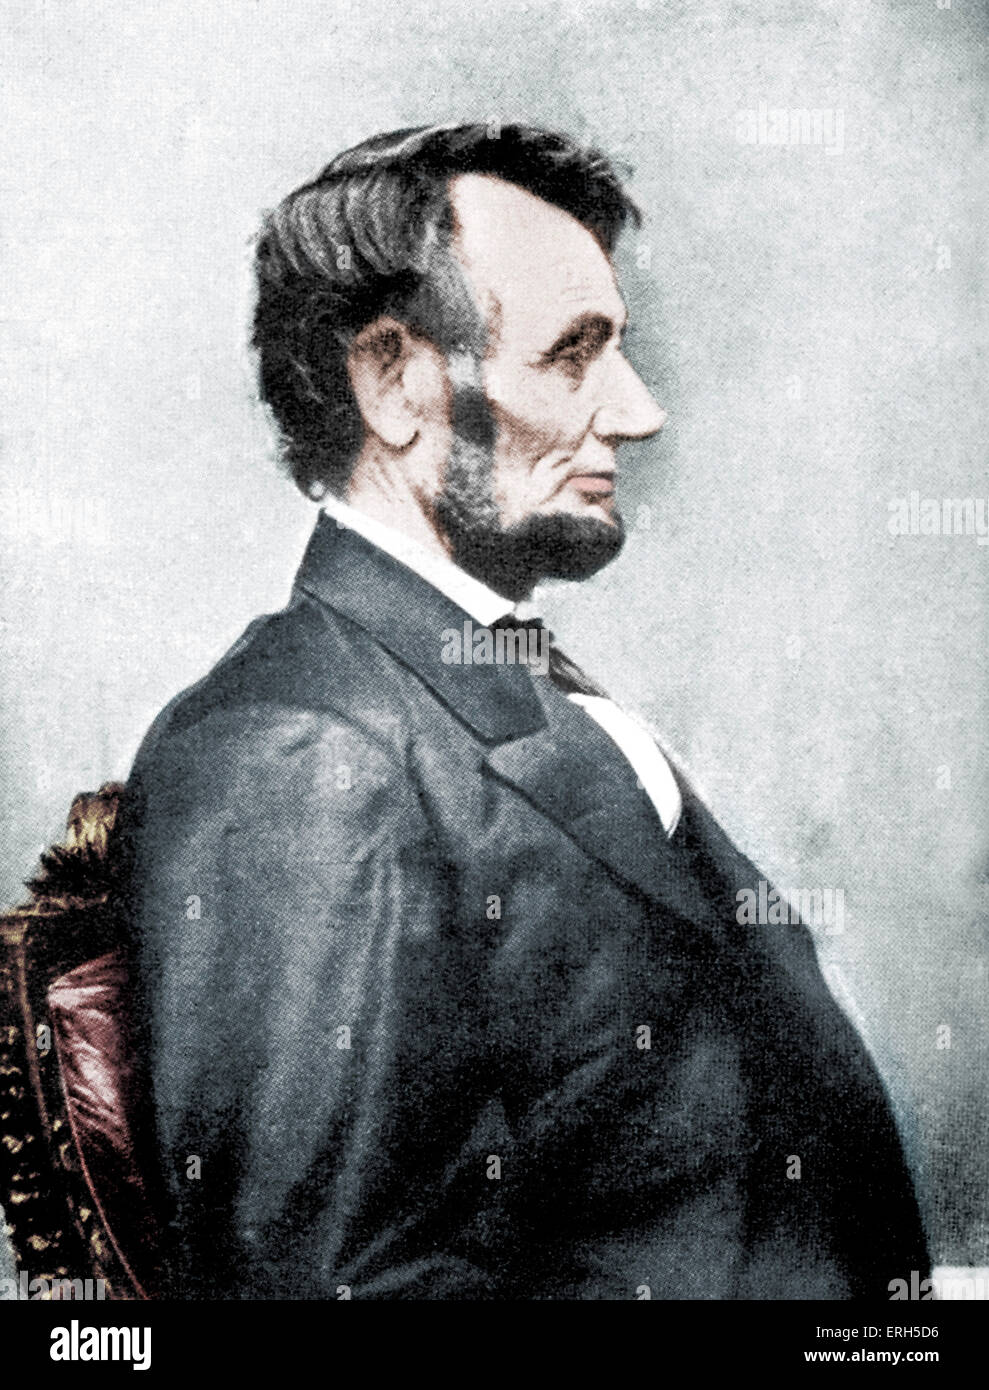 Abraham Lincoln - Porträt im Profil. Foto von der 16. Präsident der Vereinigten Staaten im Jahre 1864 übernommen, ein Jahr, bevor er ermordet wurde. 12. Februar 1809 – 15. April 1865. Farbausführung Version. Stockfoto